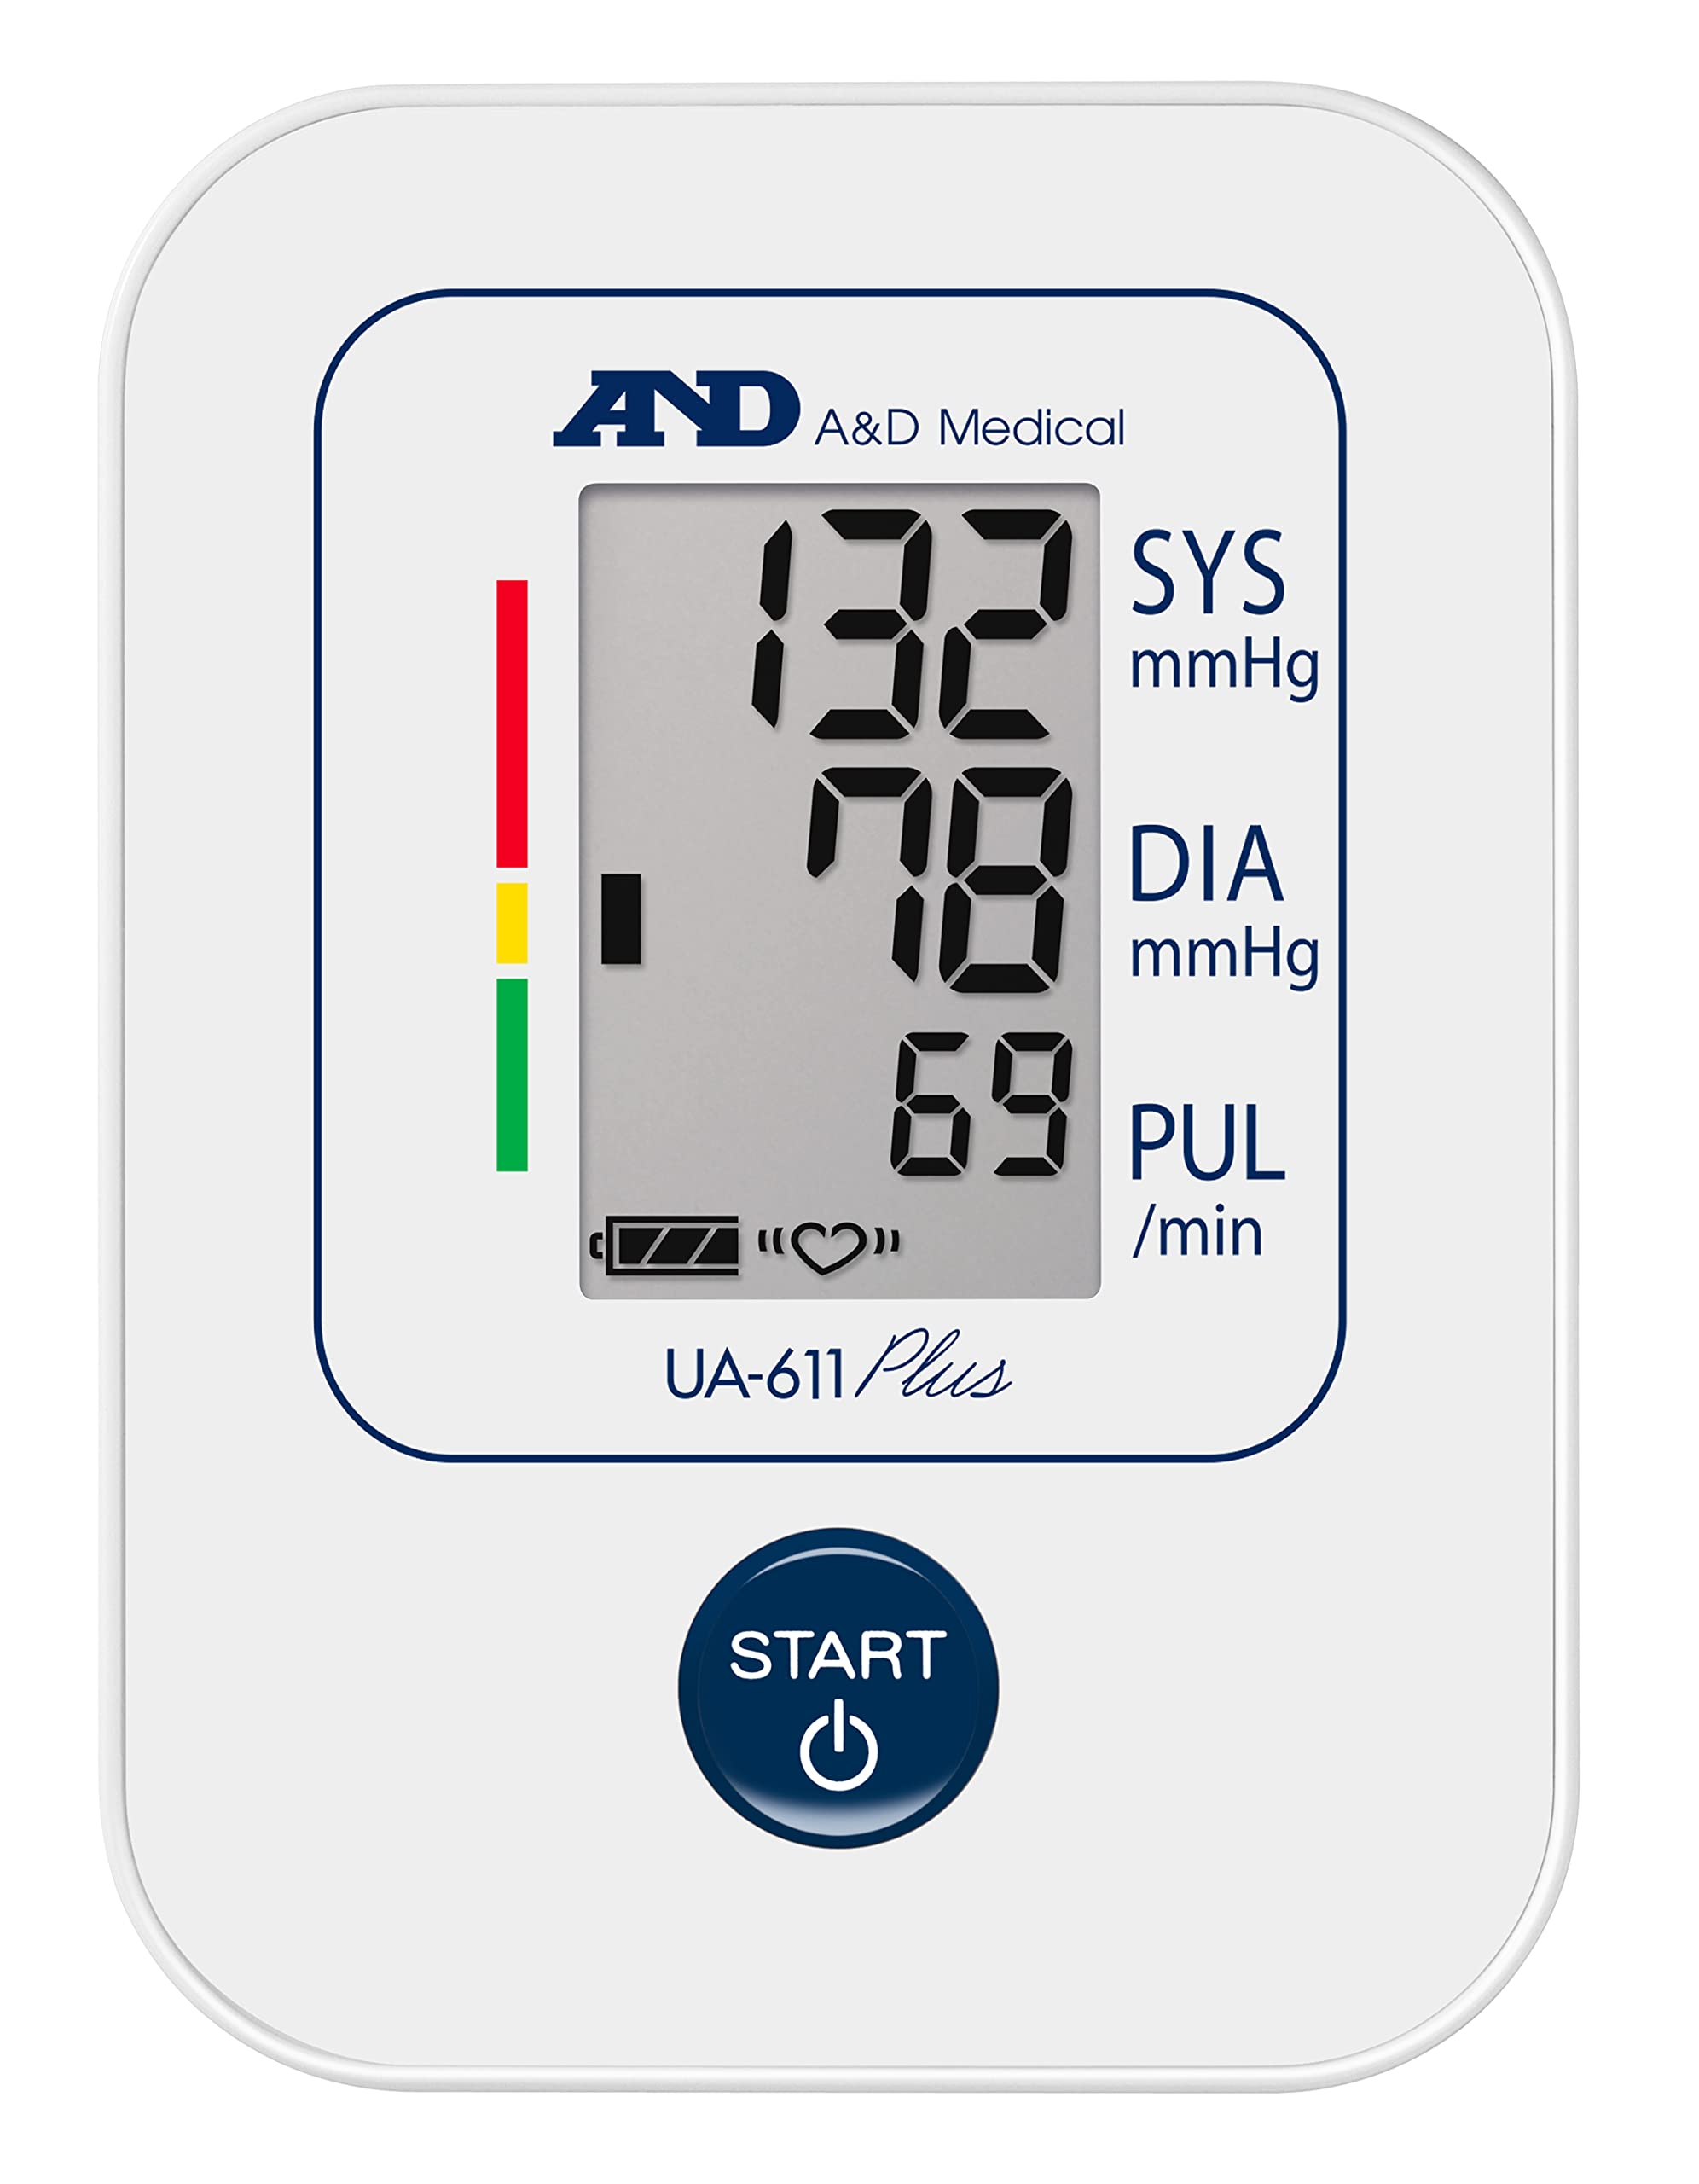 A&D Medical Blutdruckmessgerät UA-611 Plus mit AFib Screening